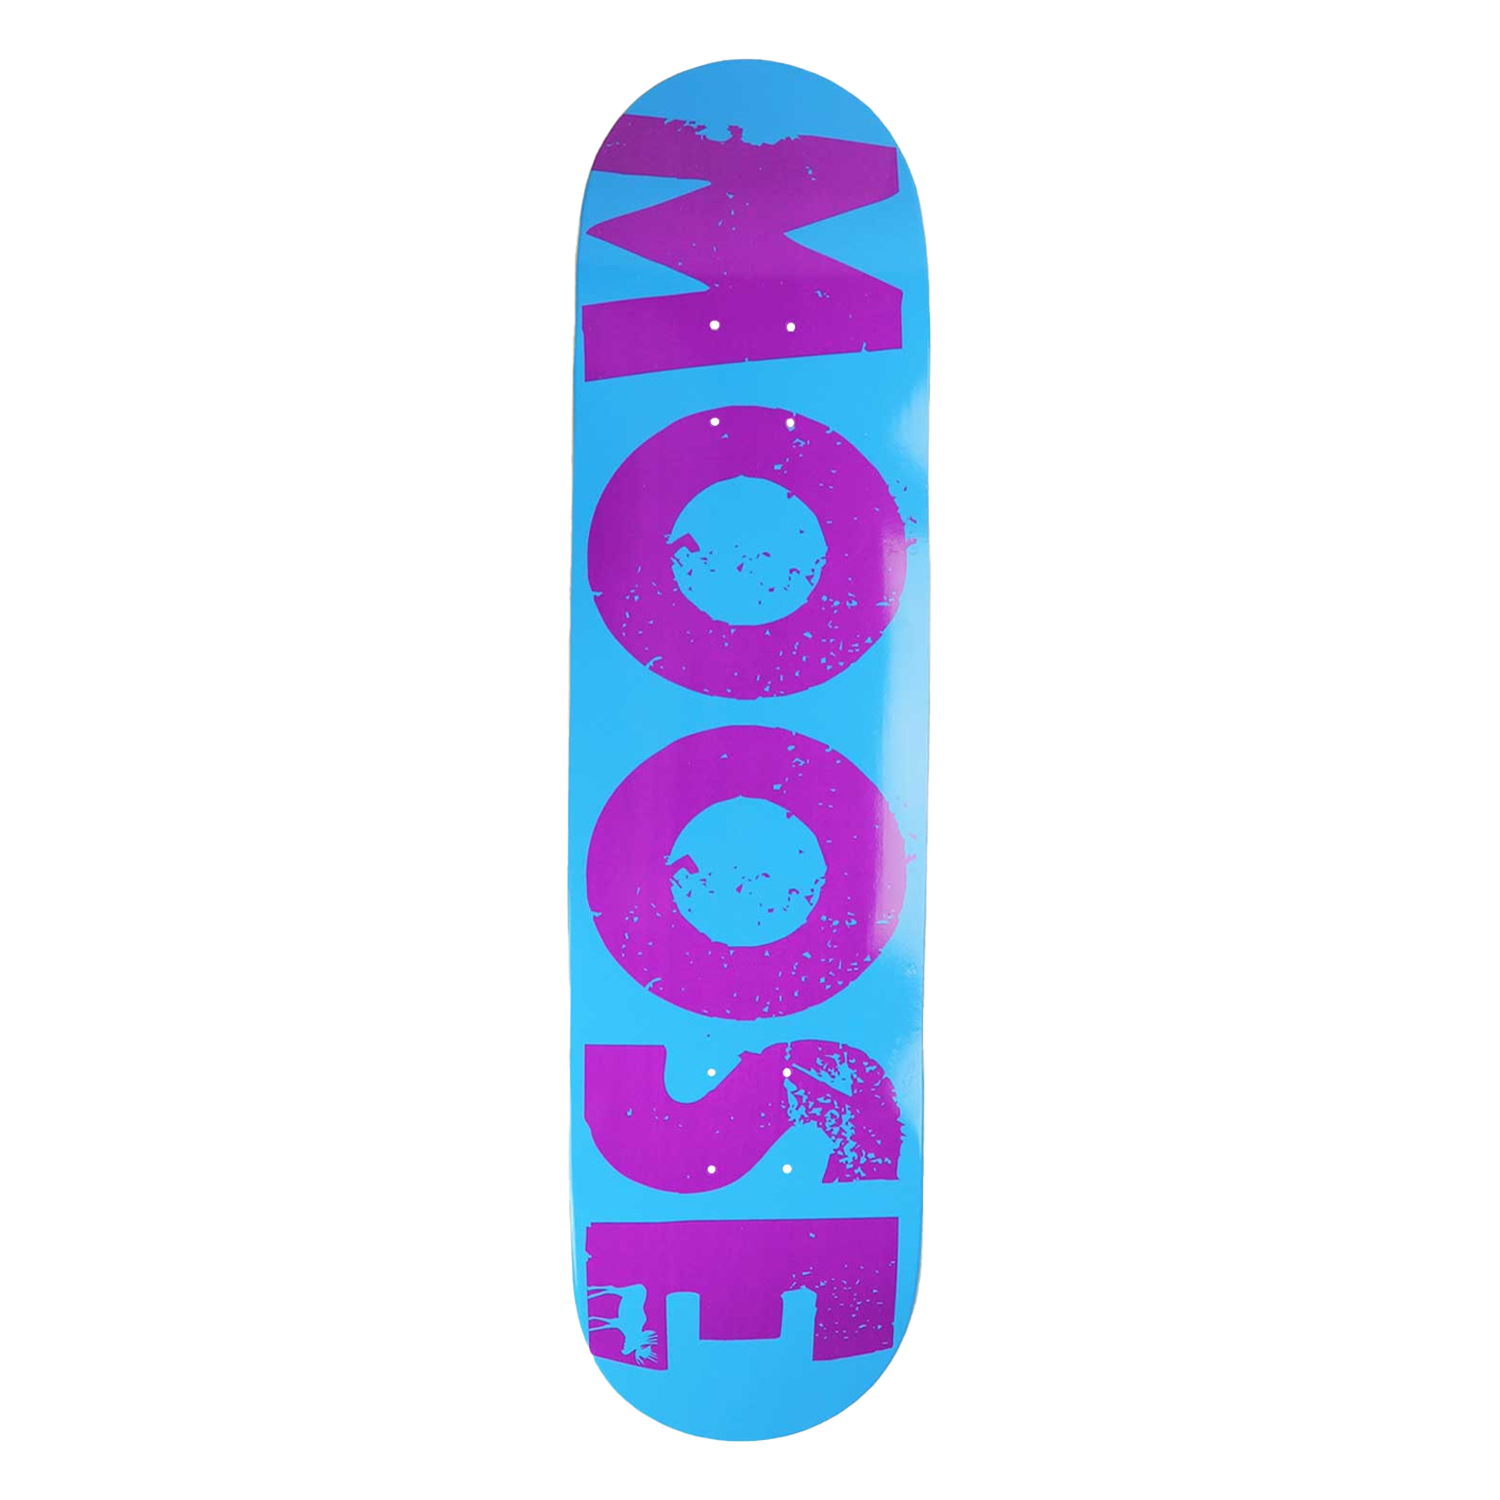 BLEMISHED Moose Skateboard Complete Skull 8.125" with Blue Trucks Shade of Blu 